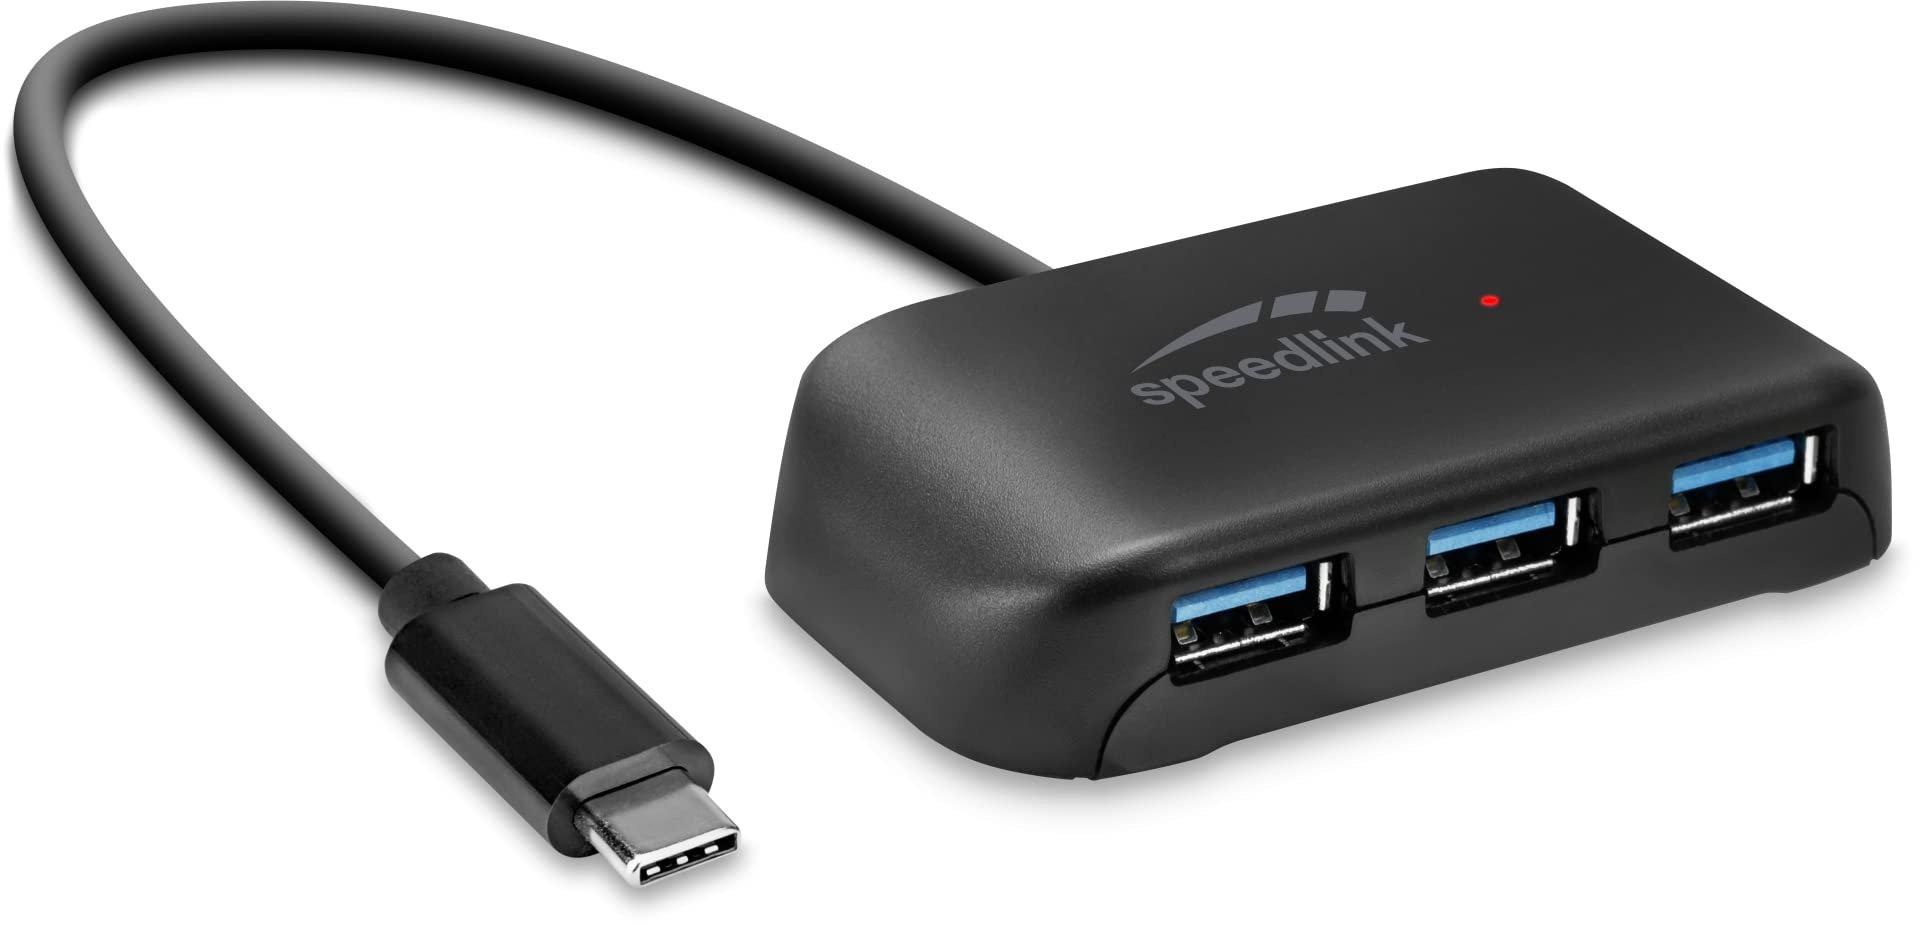 Speedlink SNAPPY EVO 4 Port USB Hub – passiver USB-C 3.1 Gen 1 Hub mit 3x USB-A und 1x USB-C für eine schnelle Datenübertragung mit bis zu 5 Gbit/s, Anschluss über USB-C, schwarz